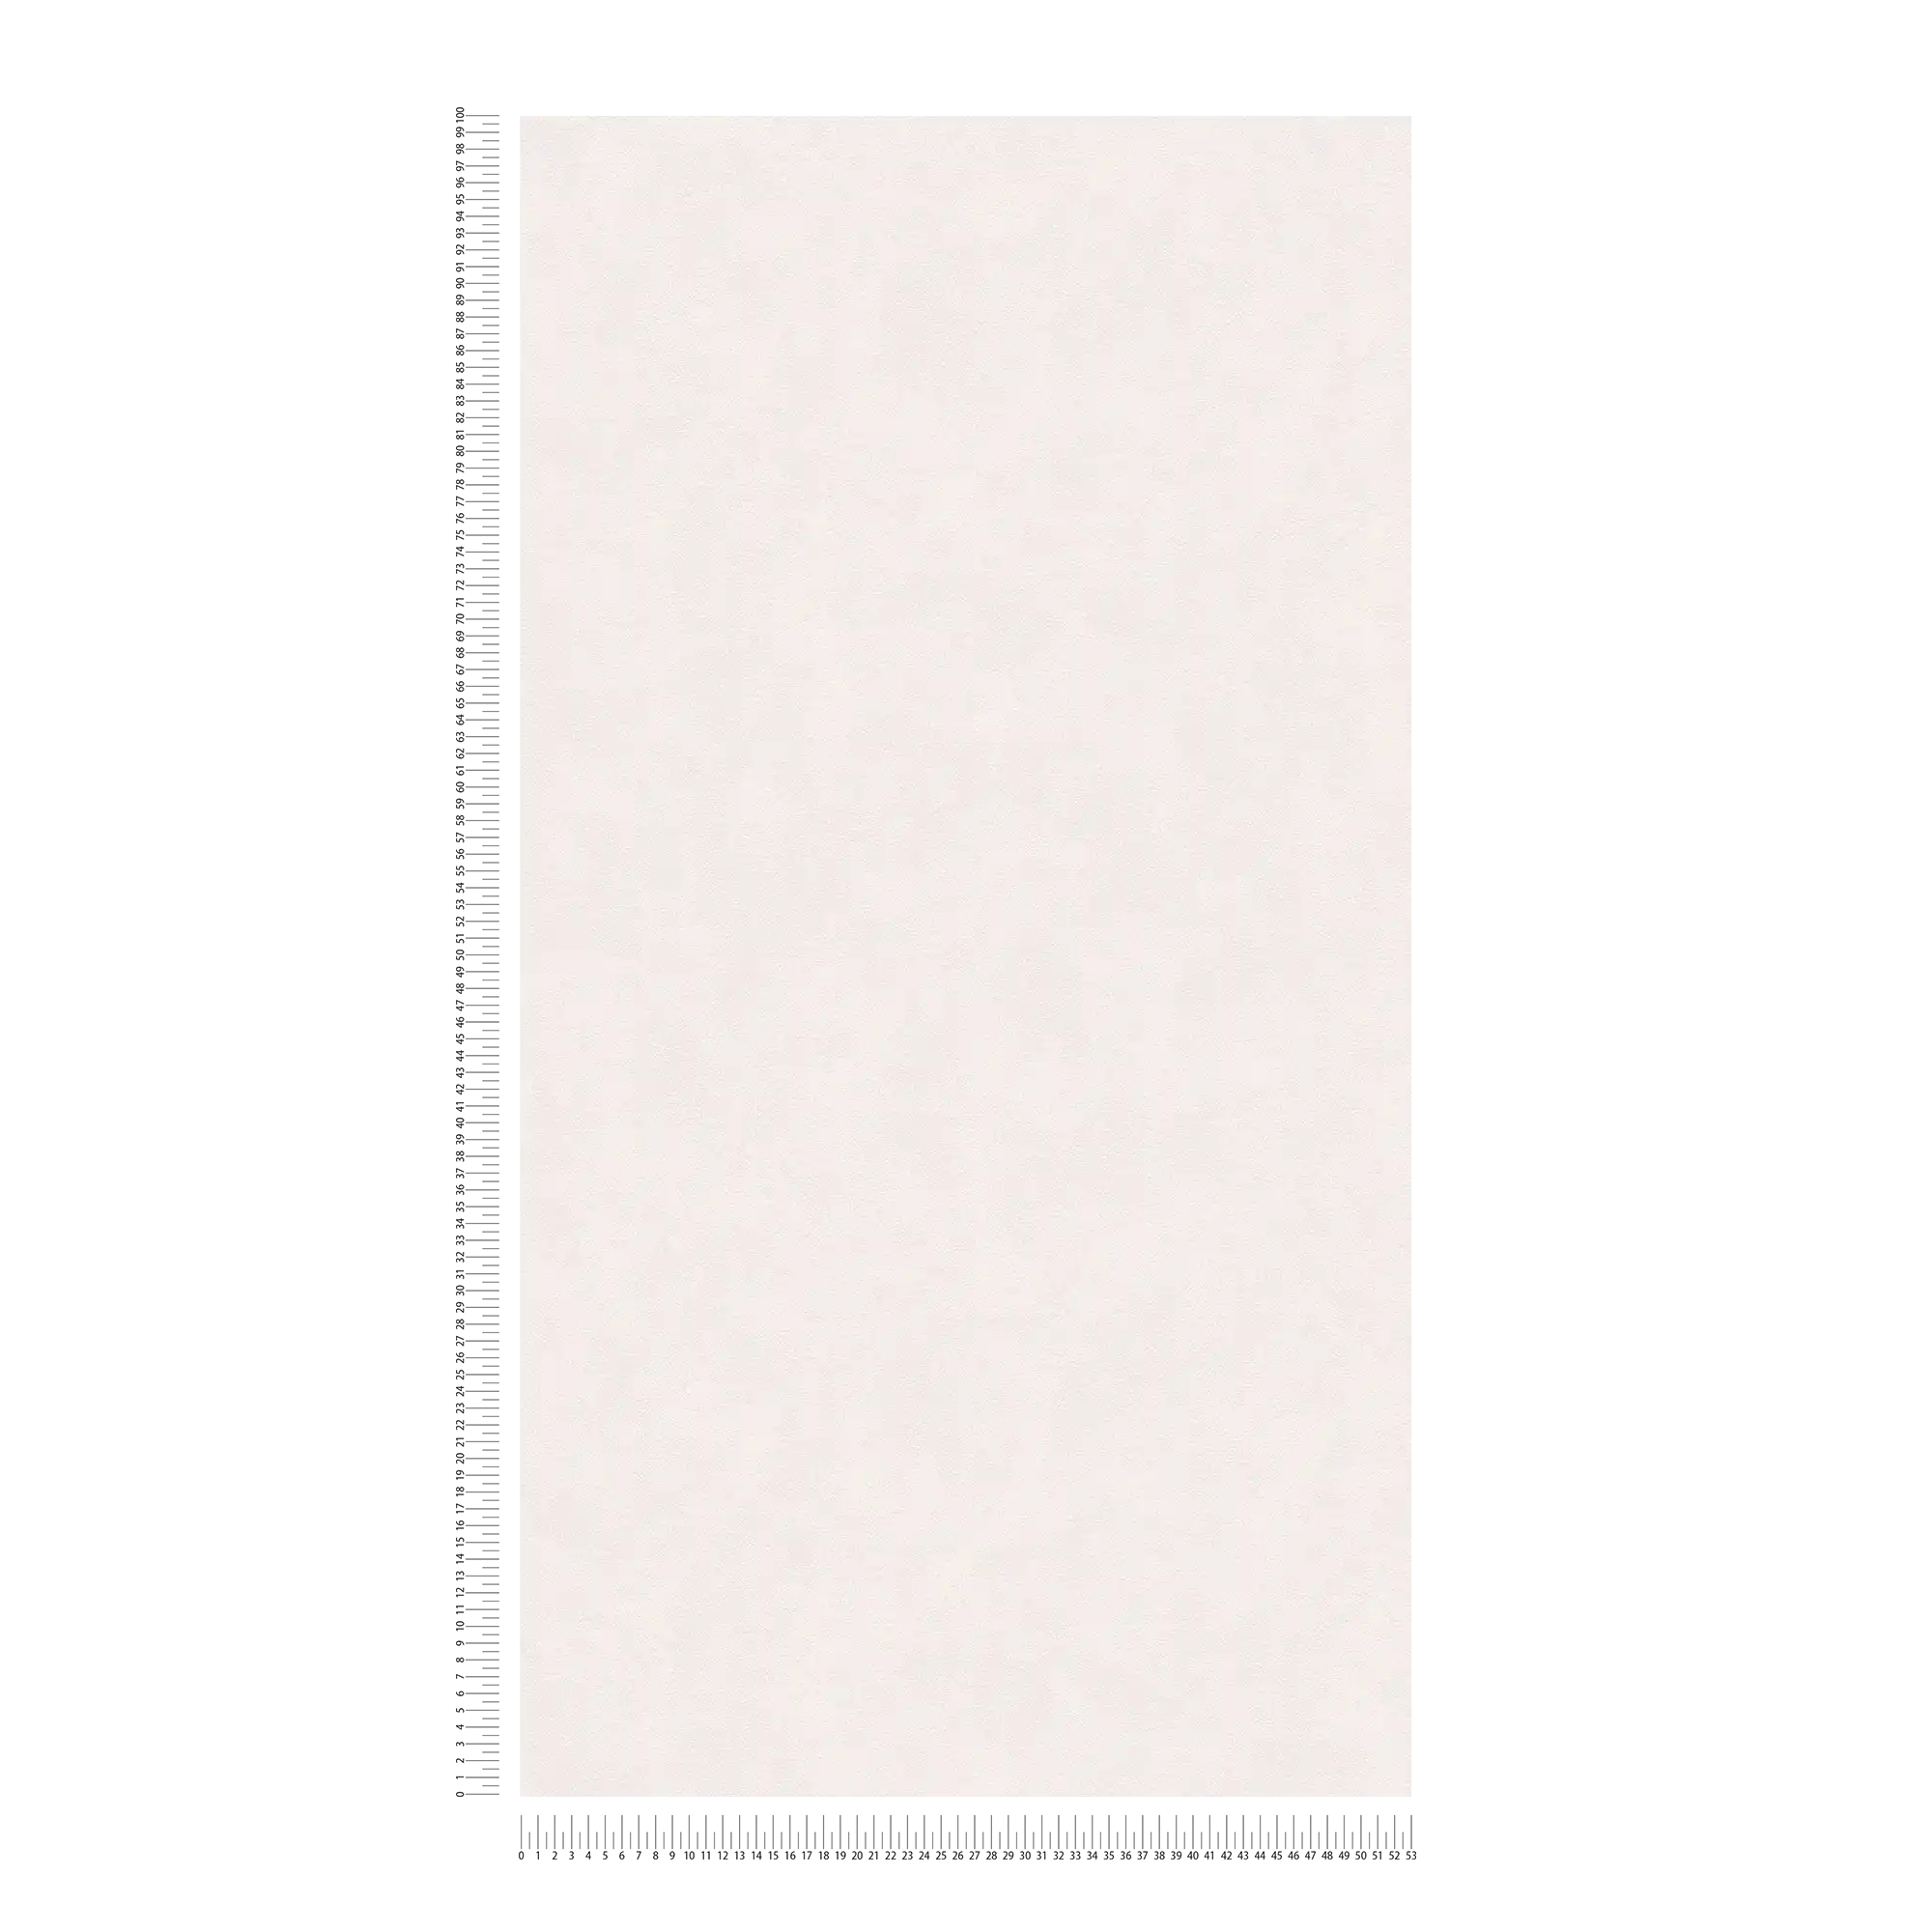             behang wit grijs uni met zijdemat structuurpatroon
        